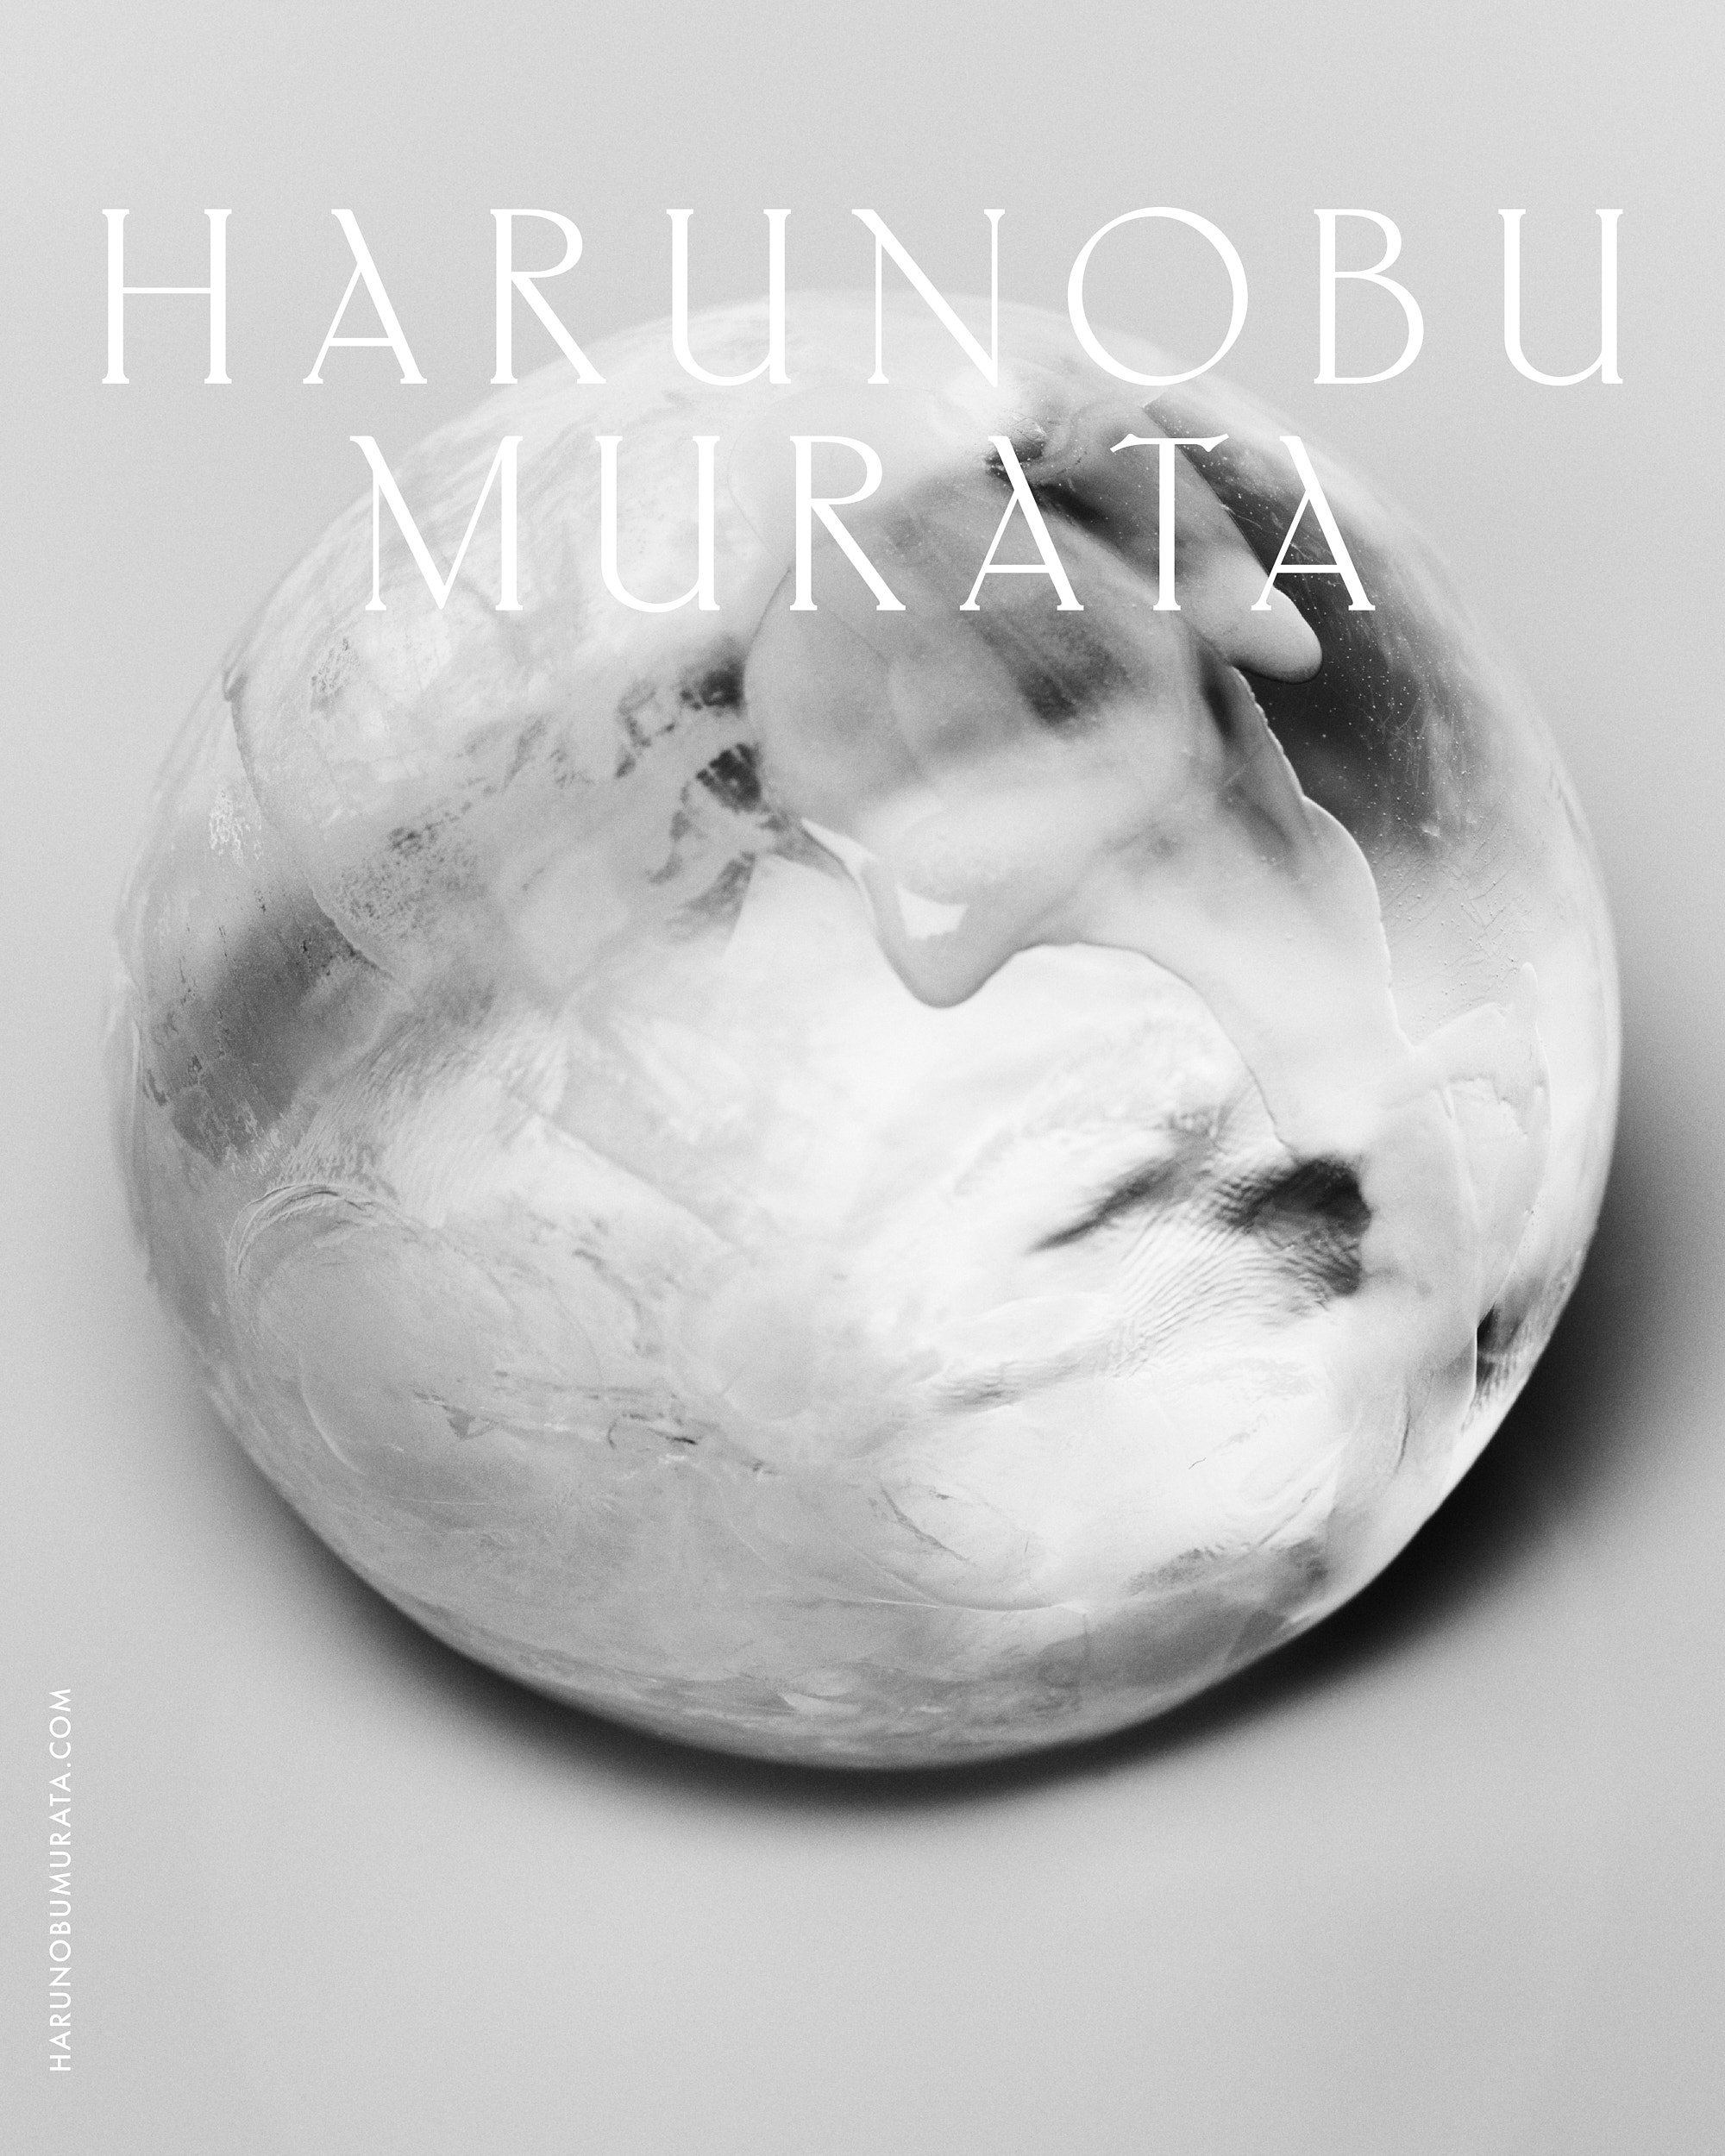 HARUNOBUMURATA Official Site